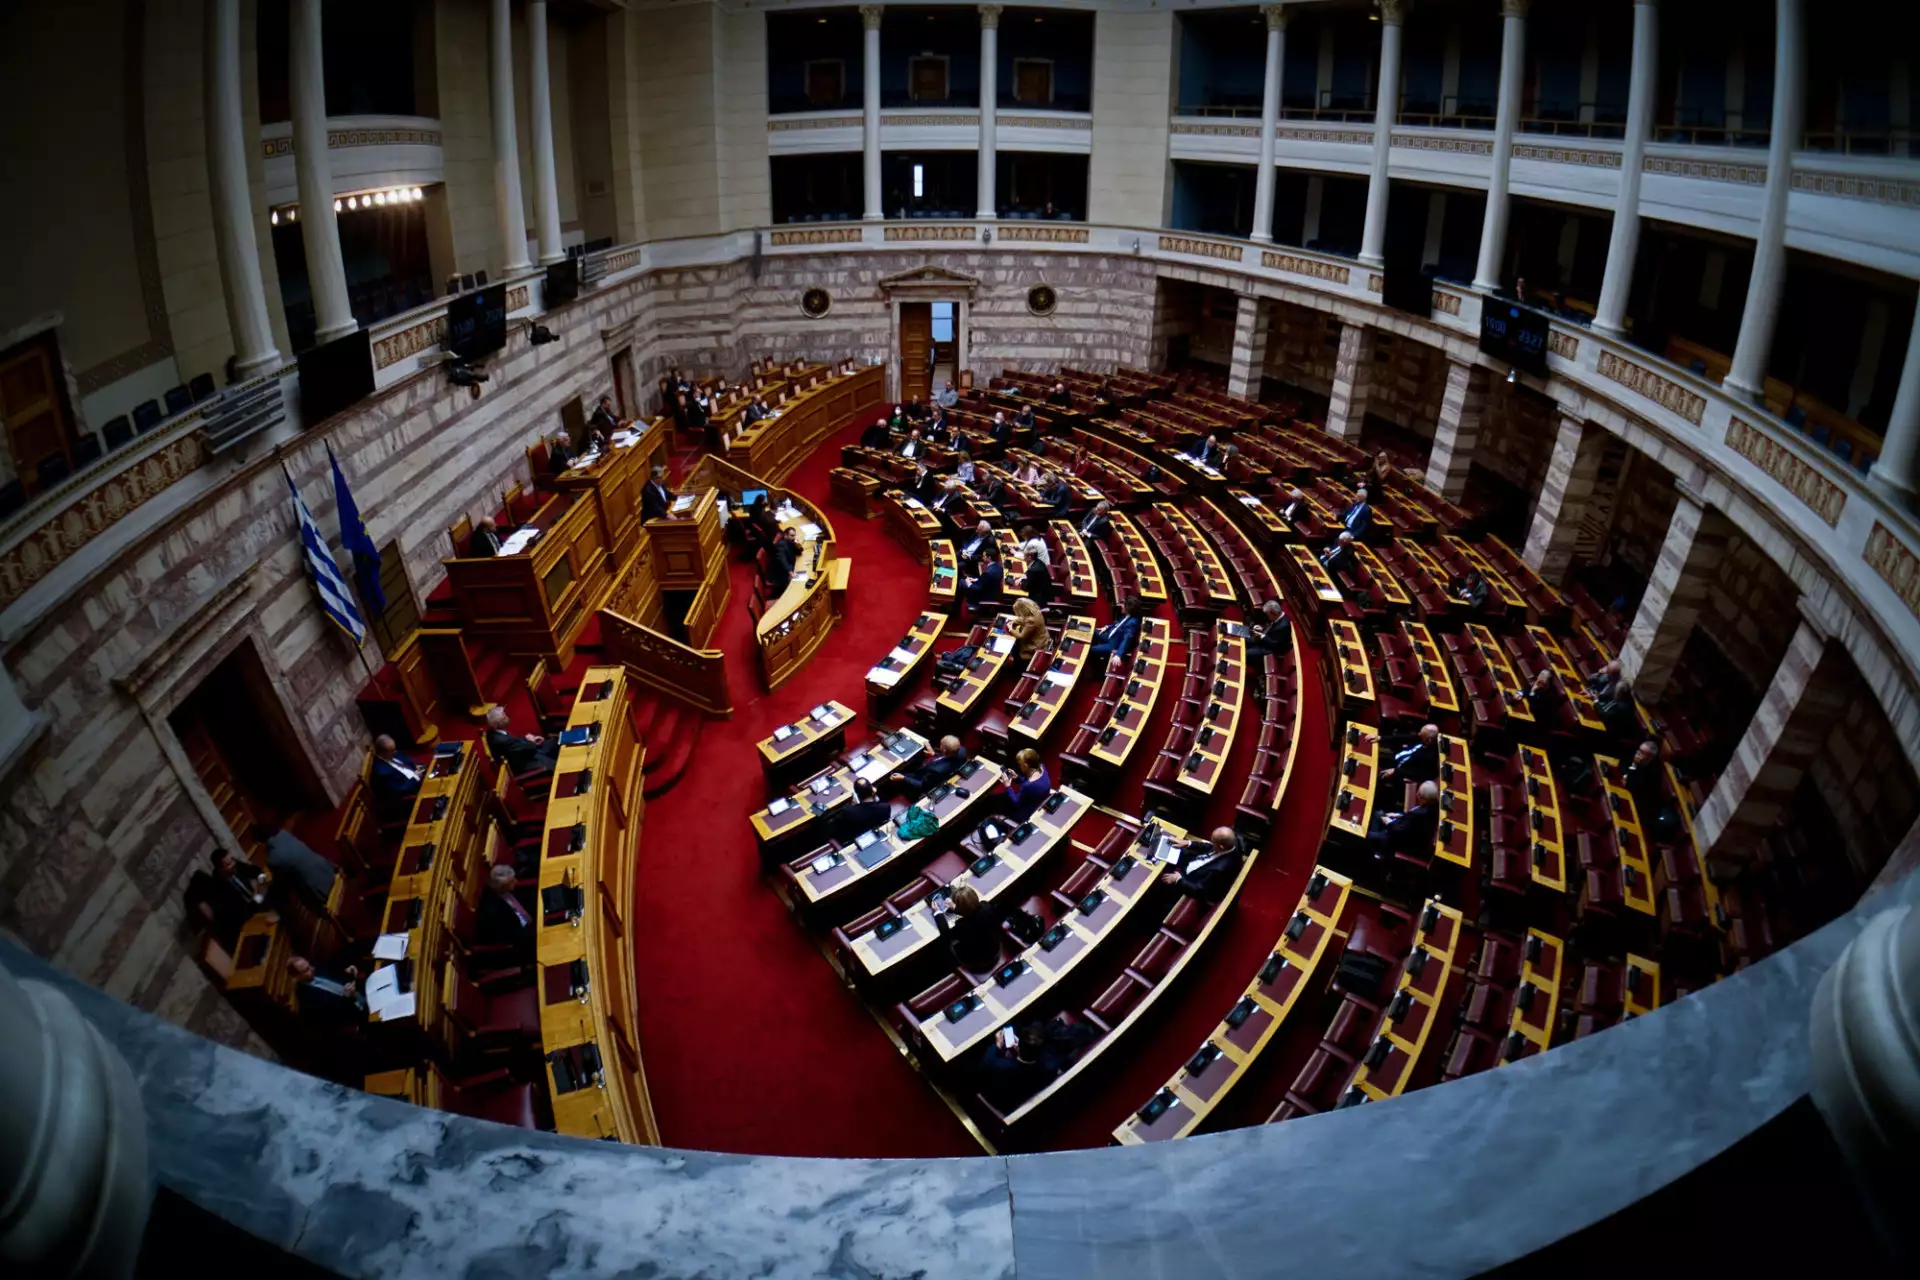 Βουλή: Κατατέθηκε το νομοσχέδιο για τον εκσυγχρονισμό της μουσειακής πολιτικής